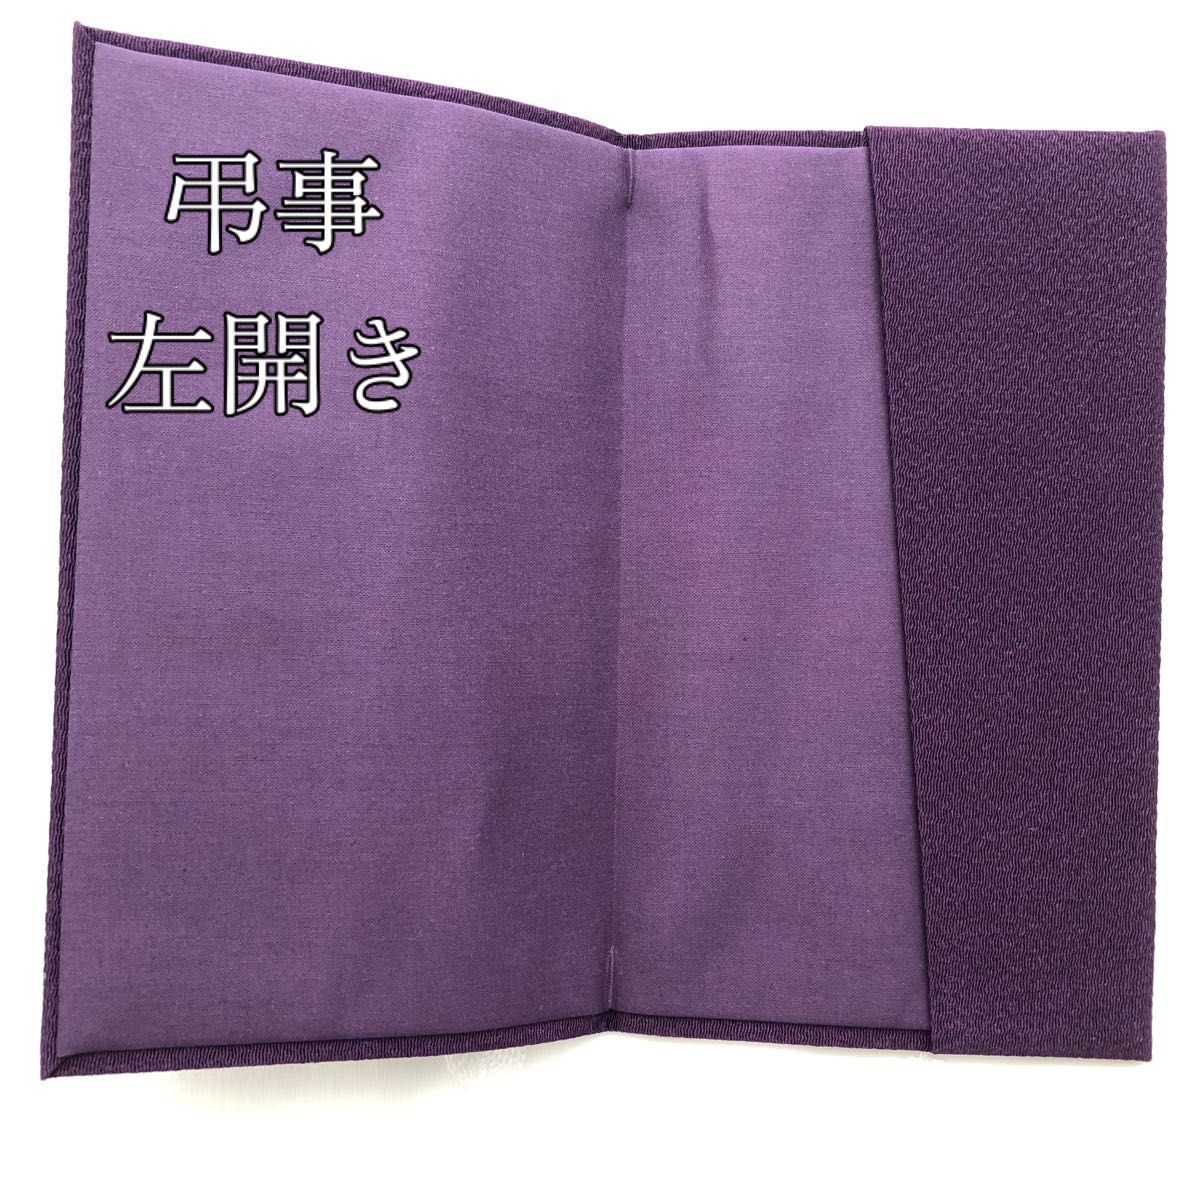 紫 匿名配送 袱紗 フクサ 金封 慶弔両用 ちりめん 冠婚葬祭 葬式 結婚式 日本製